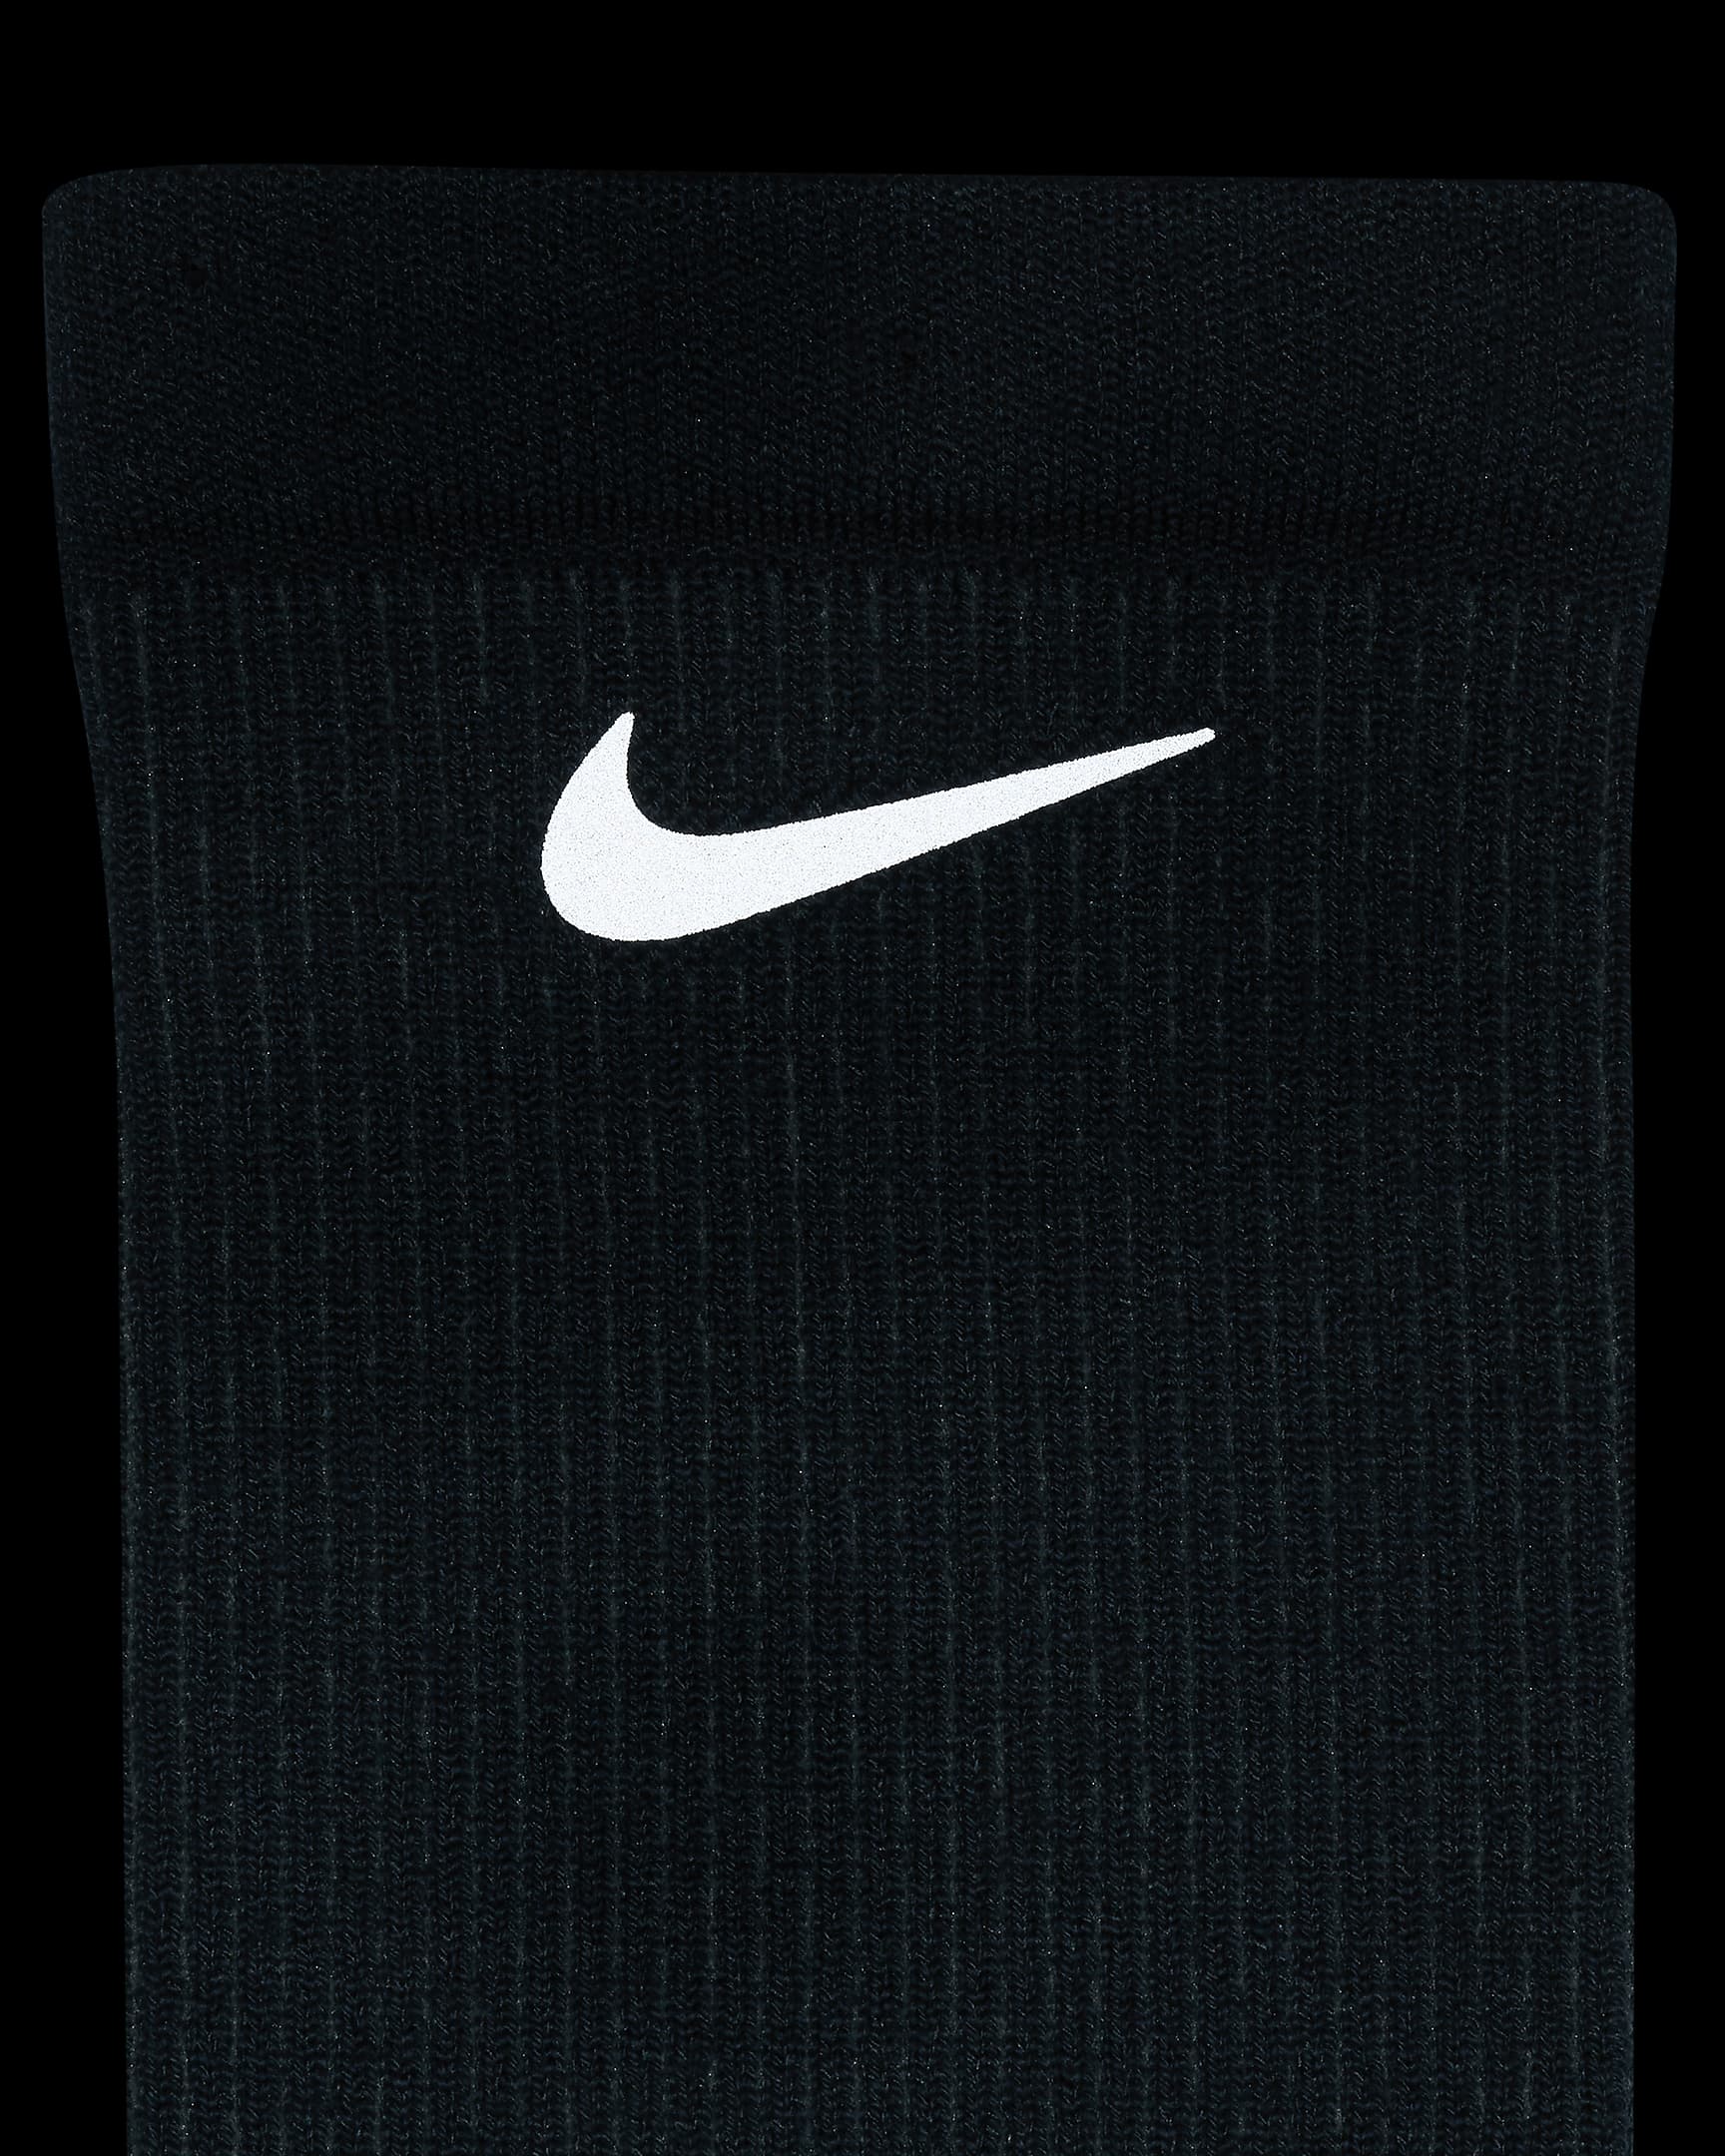 Nike Dri-FIT Trail-Running Crew Socks. Nike SE